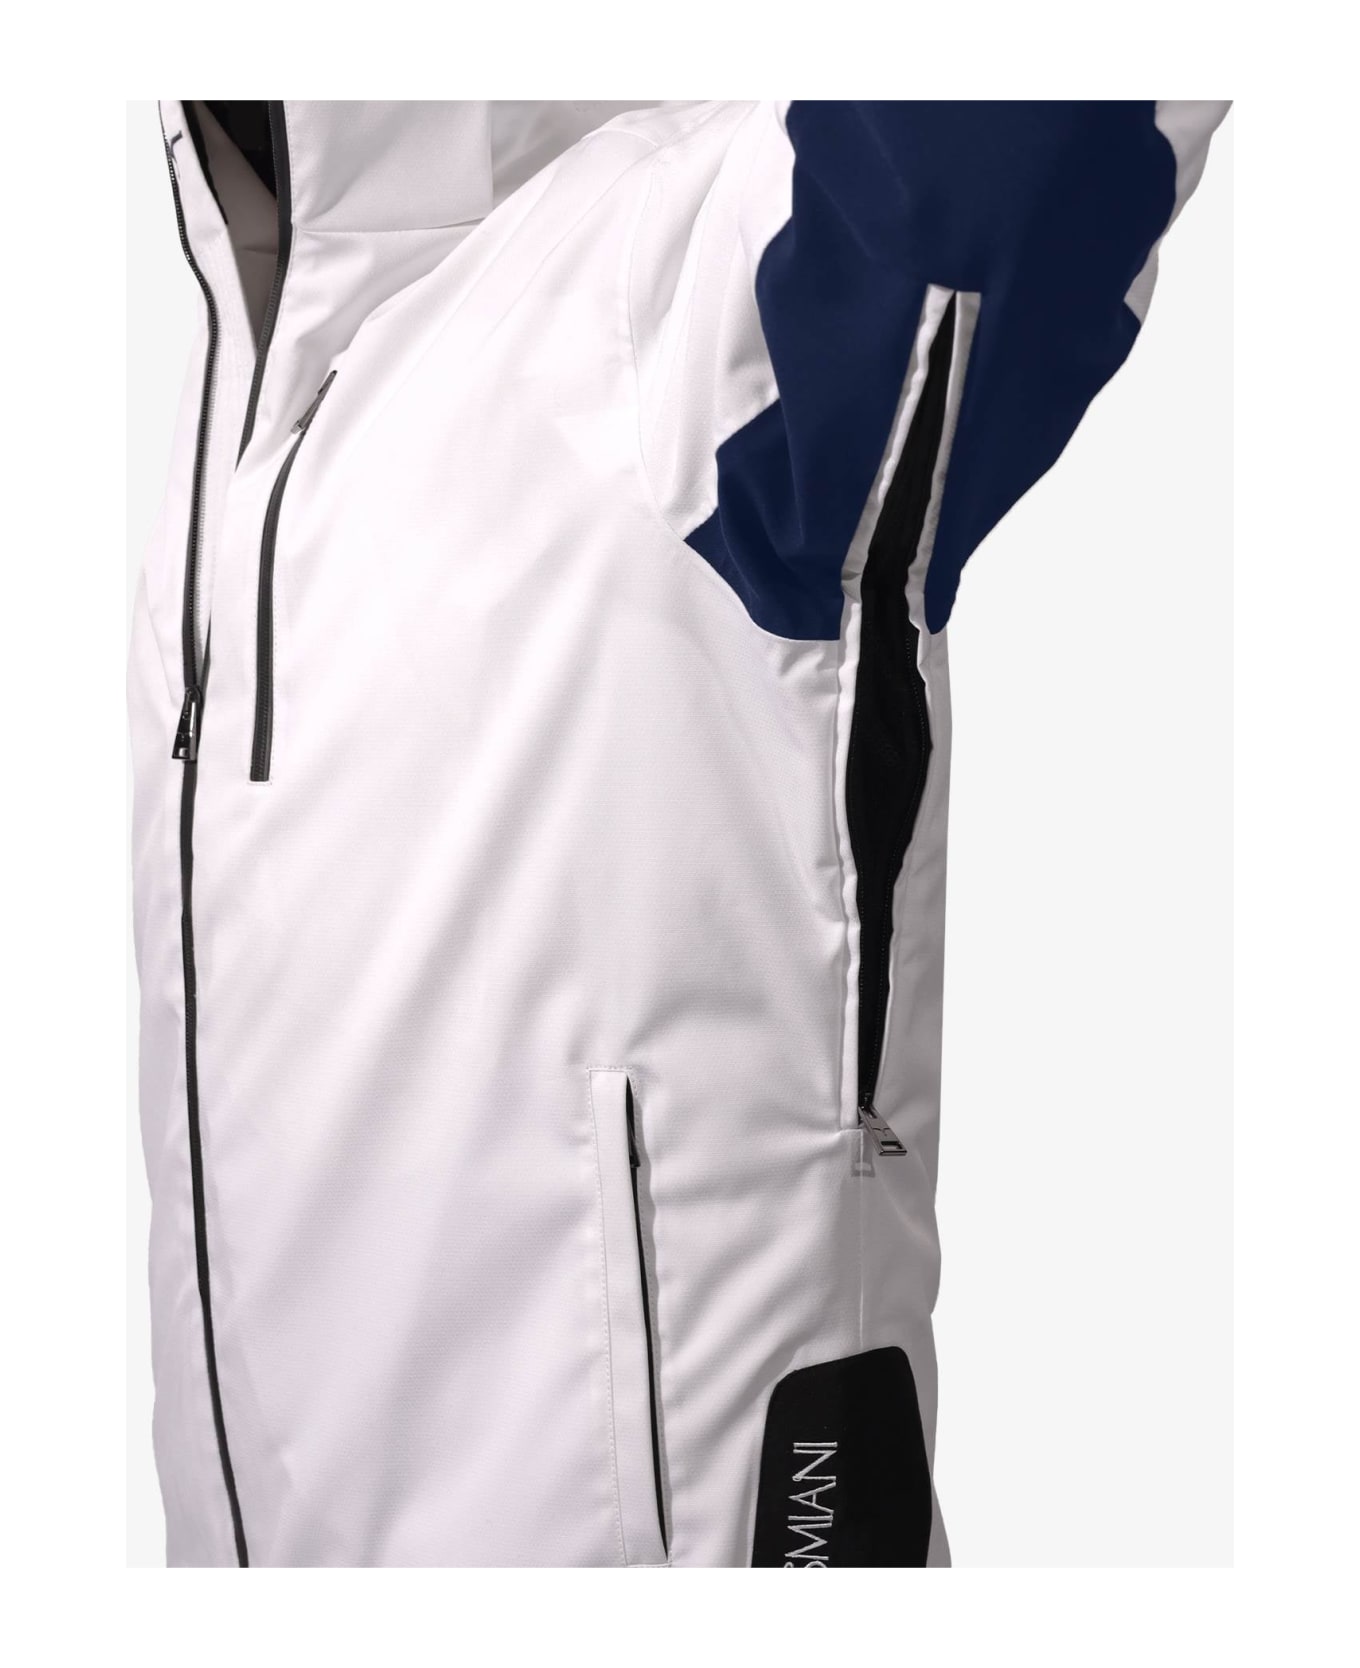 Larusmiani Ski Jacket Jacket - White